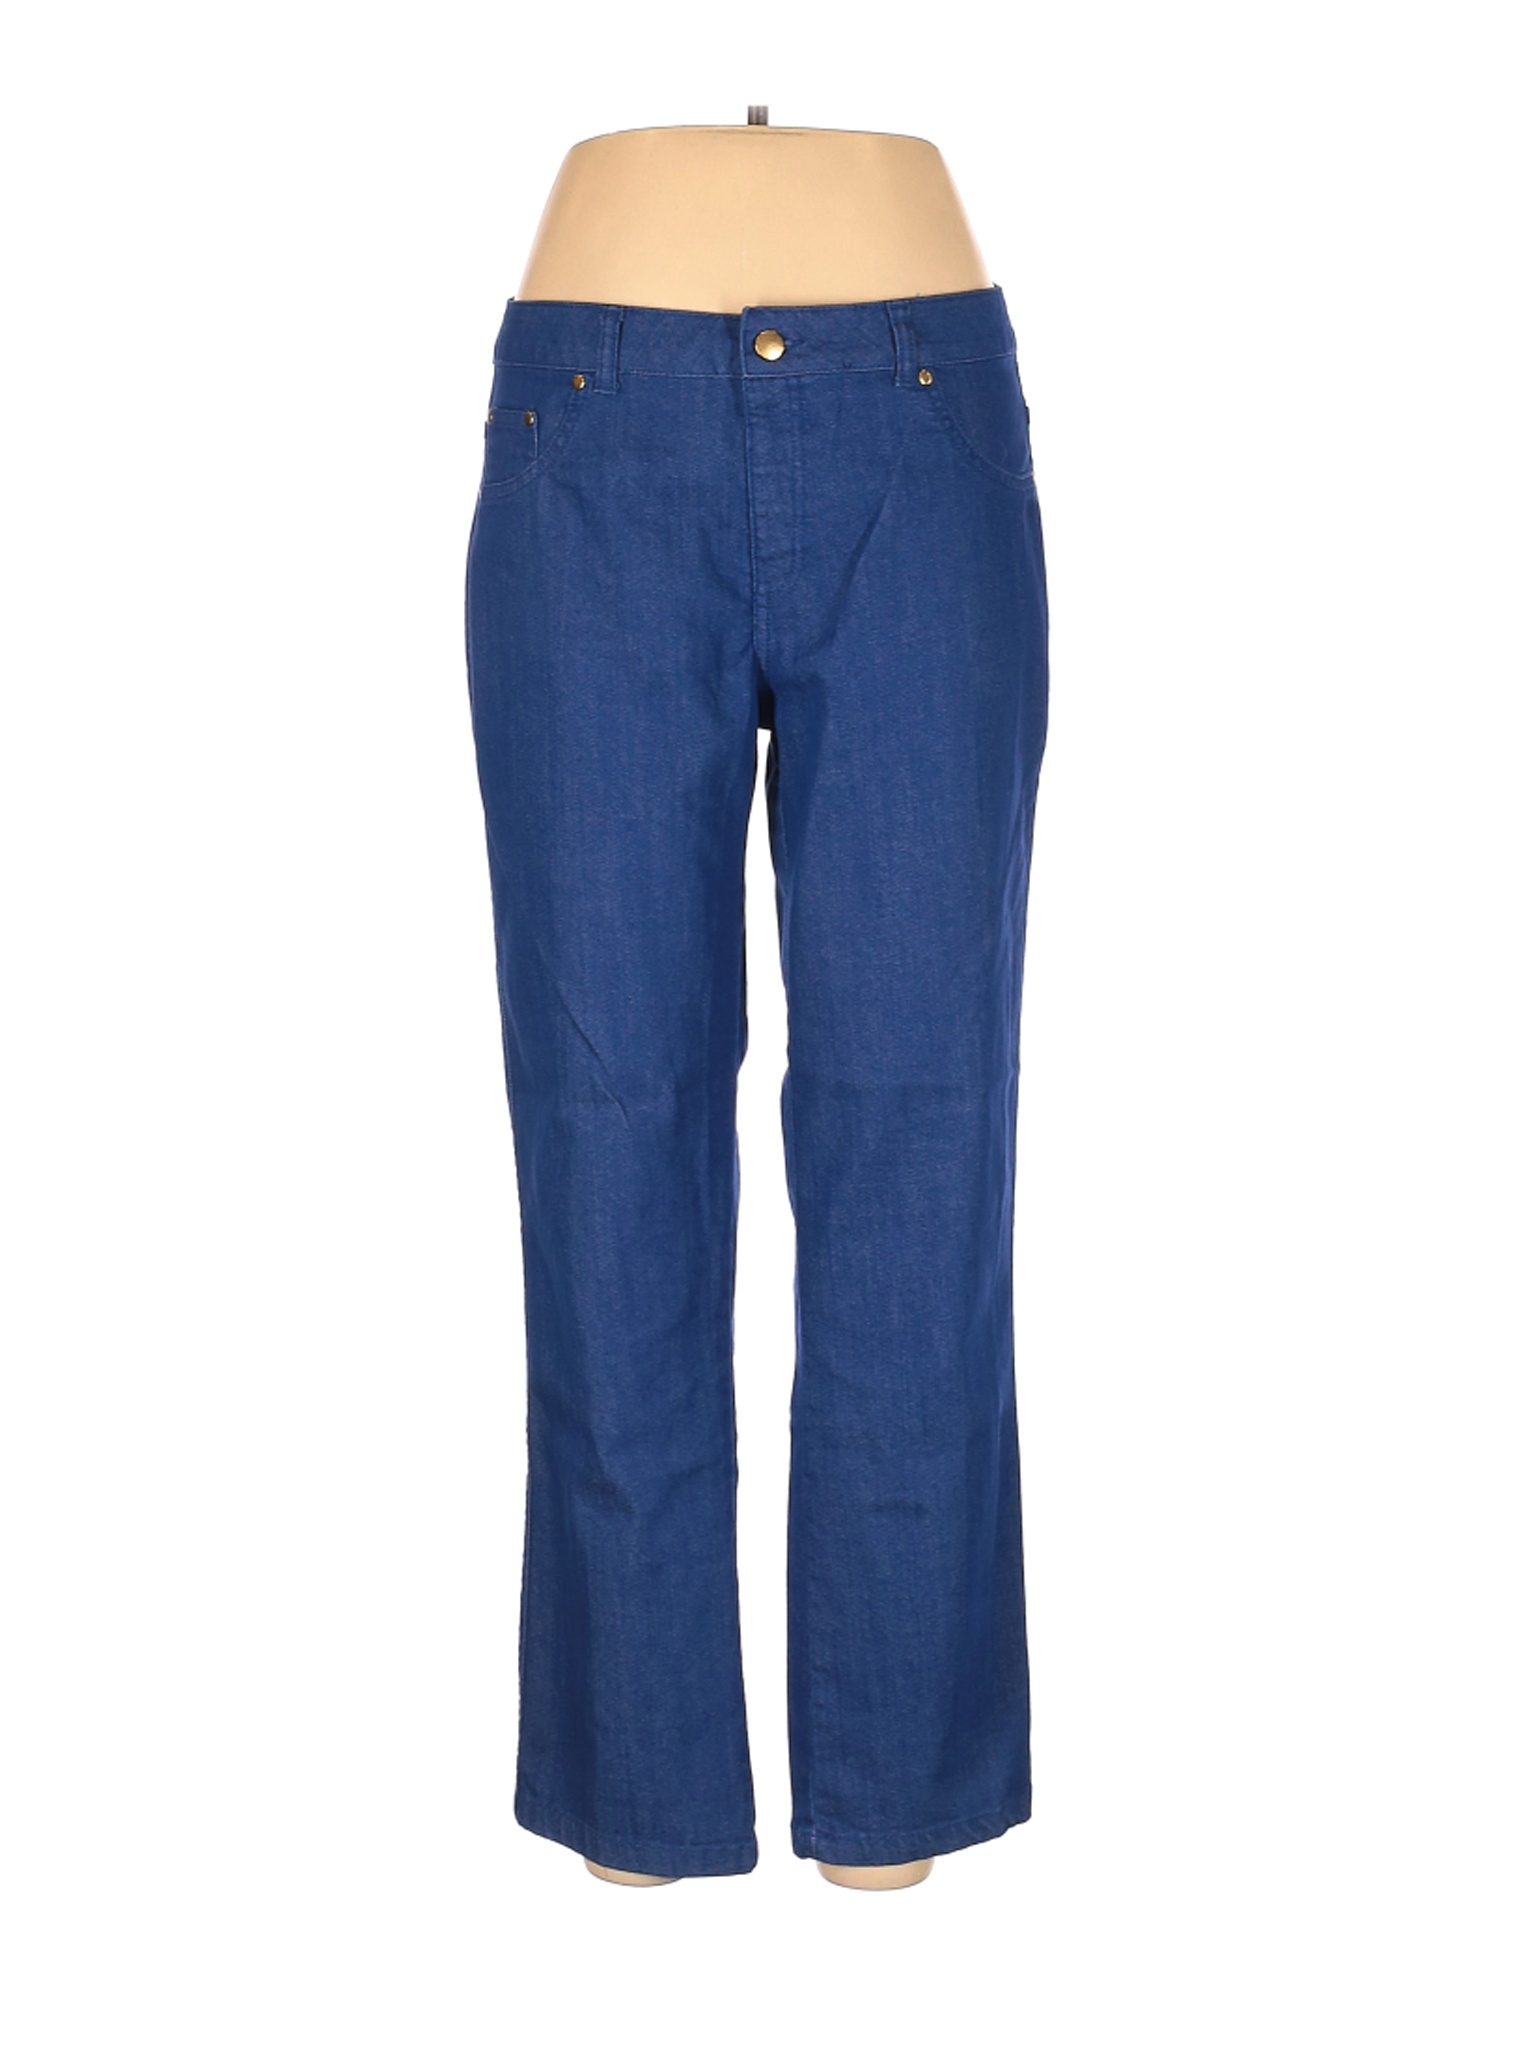 IMAN Women Blue Jeans L | eBay